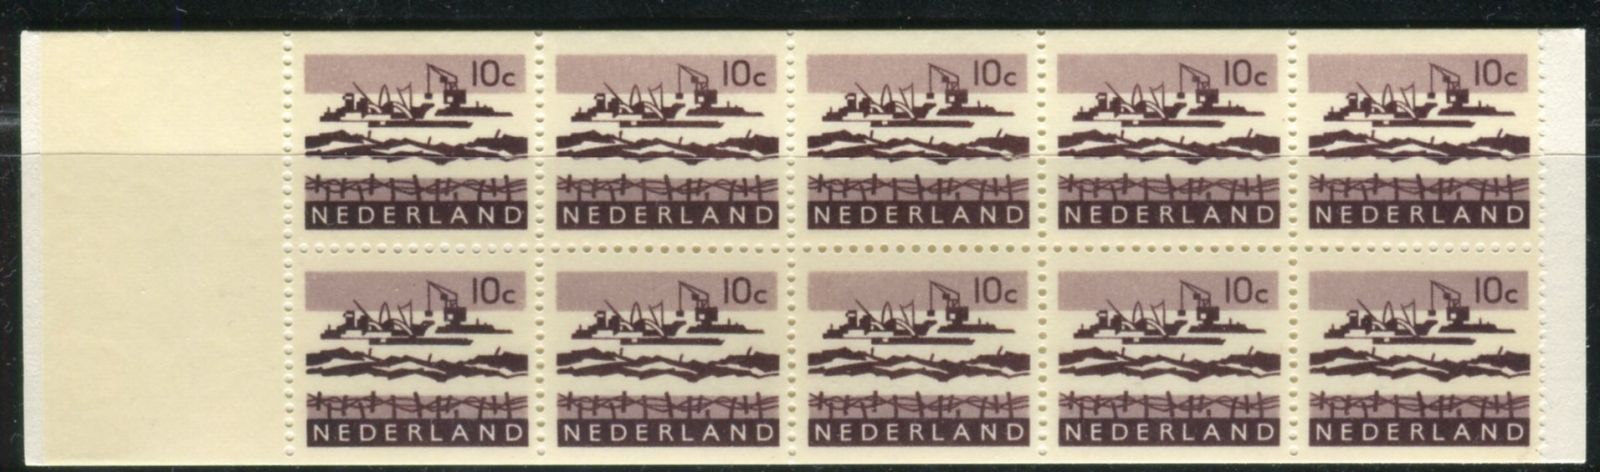 (1966) MiNr. 800 ** - ZS - Nizozemsko - krajiny